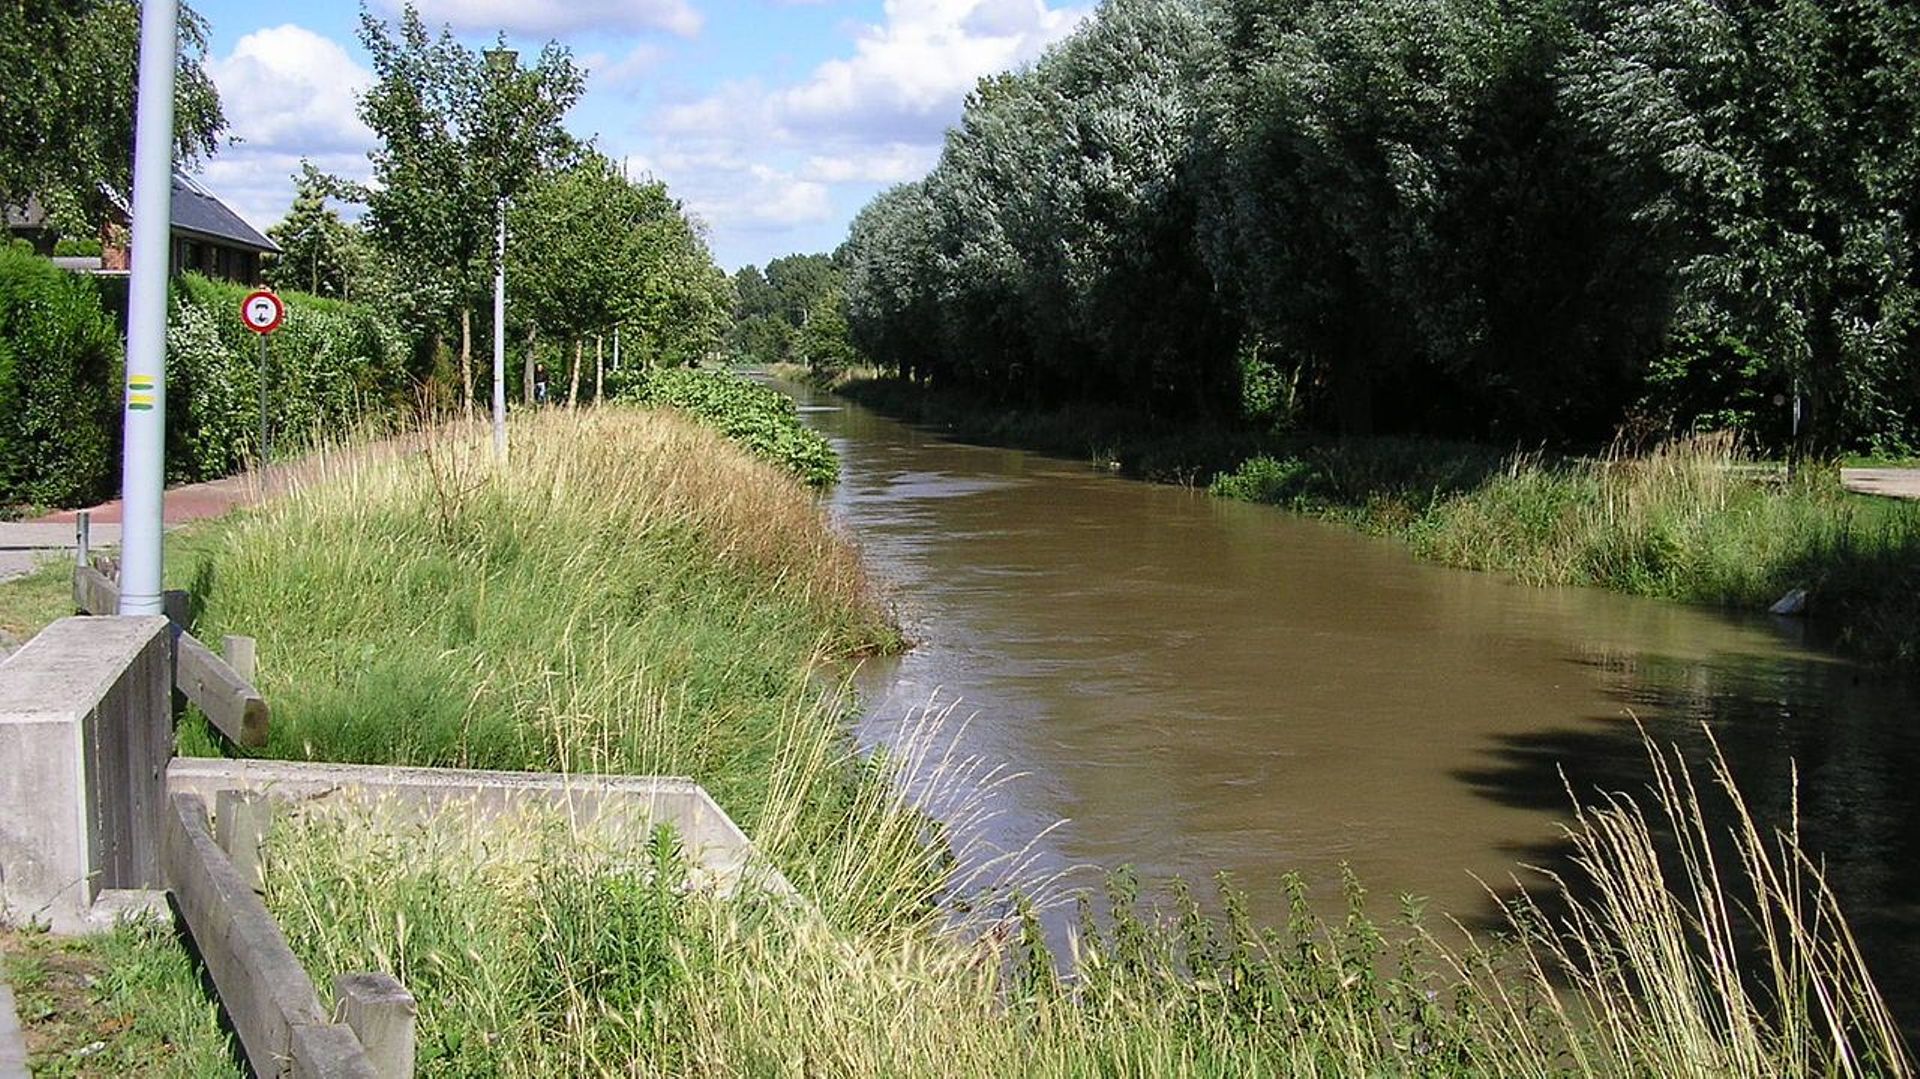 Le cours d'eau "le plus pollué d'Europe" coule en Flandre, selon Greenpeace